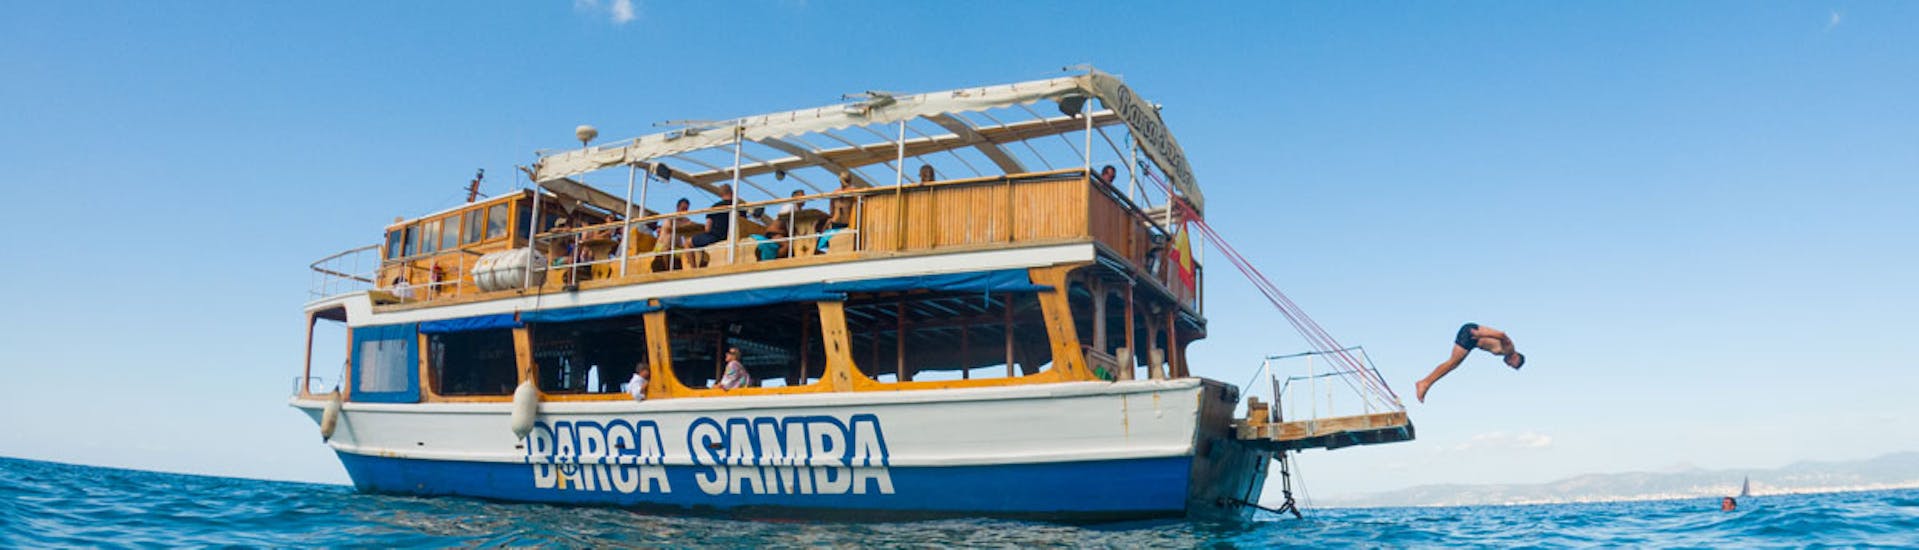 El barco de Samba Boat celebrando una fiesta en barco desde Palma de Mallorca con DJ y almuerzo incluido.